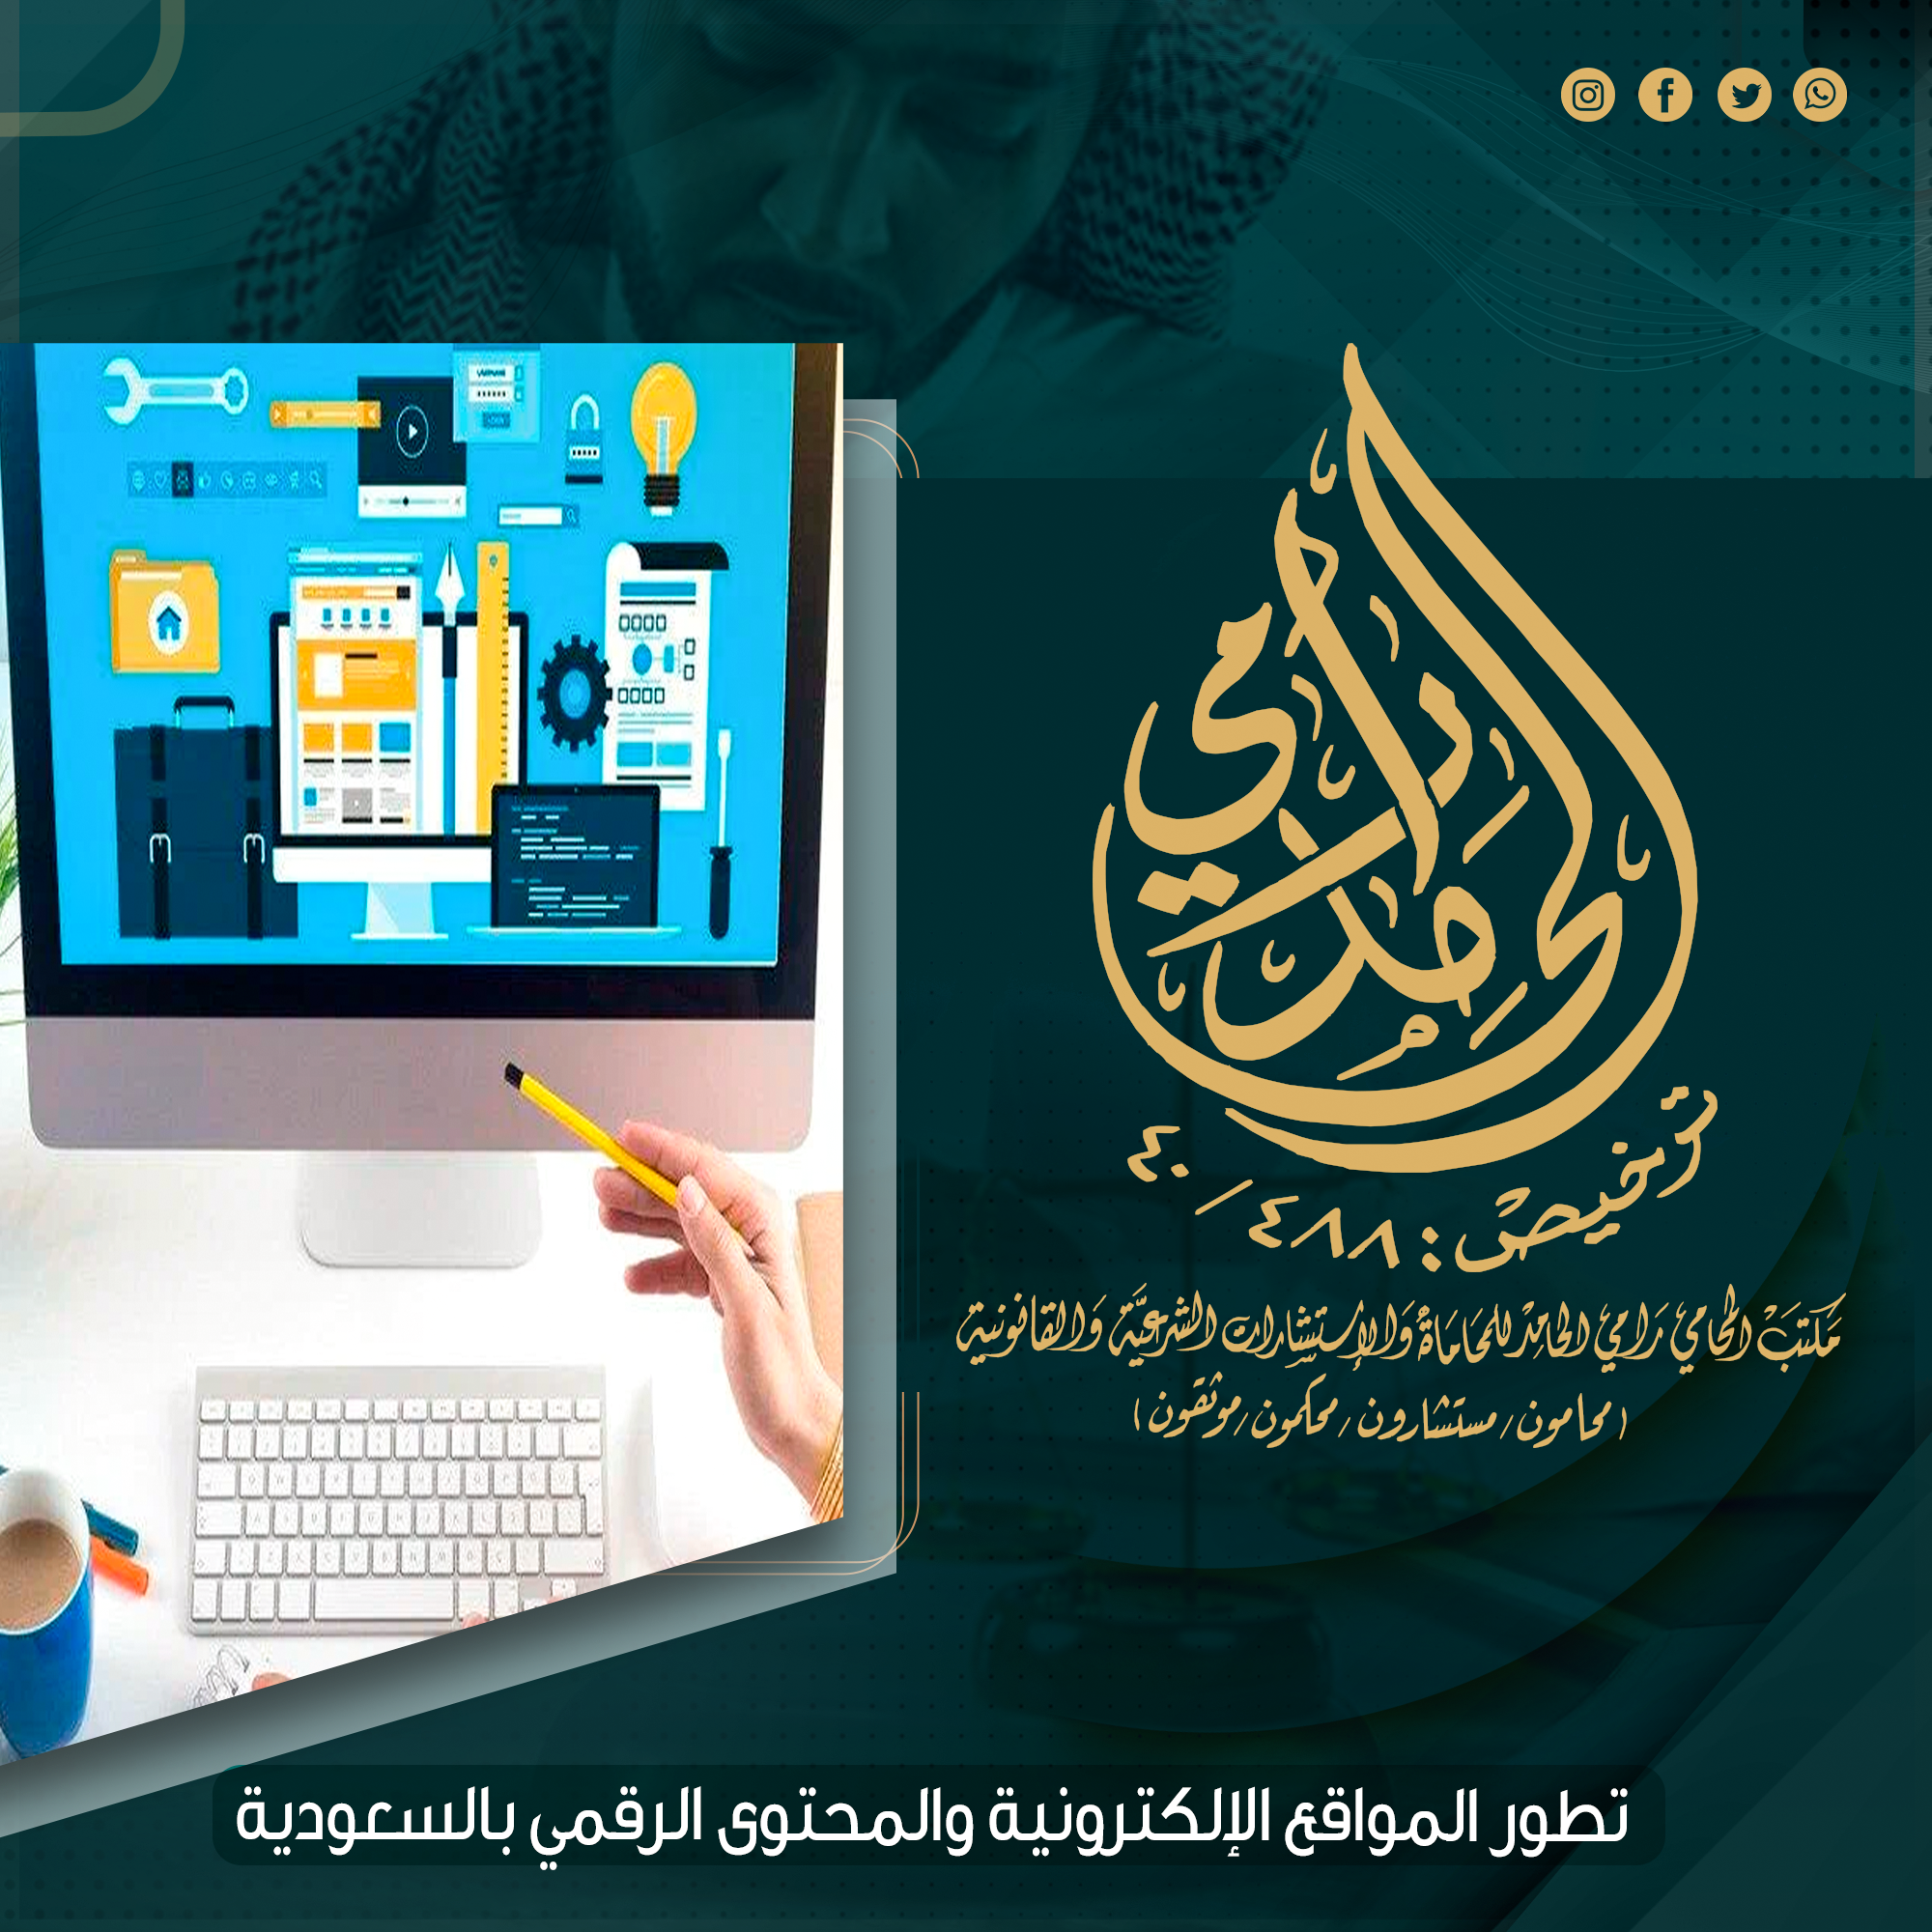 مراحل تطور استخدام الإنترنت والخدمات الإلكترونية بالسعودية